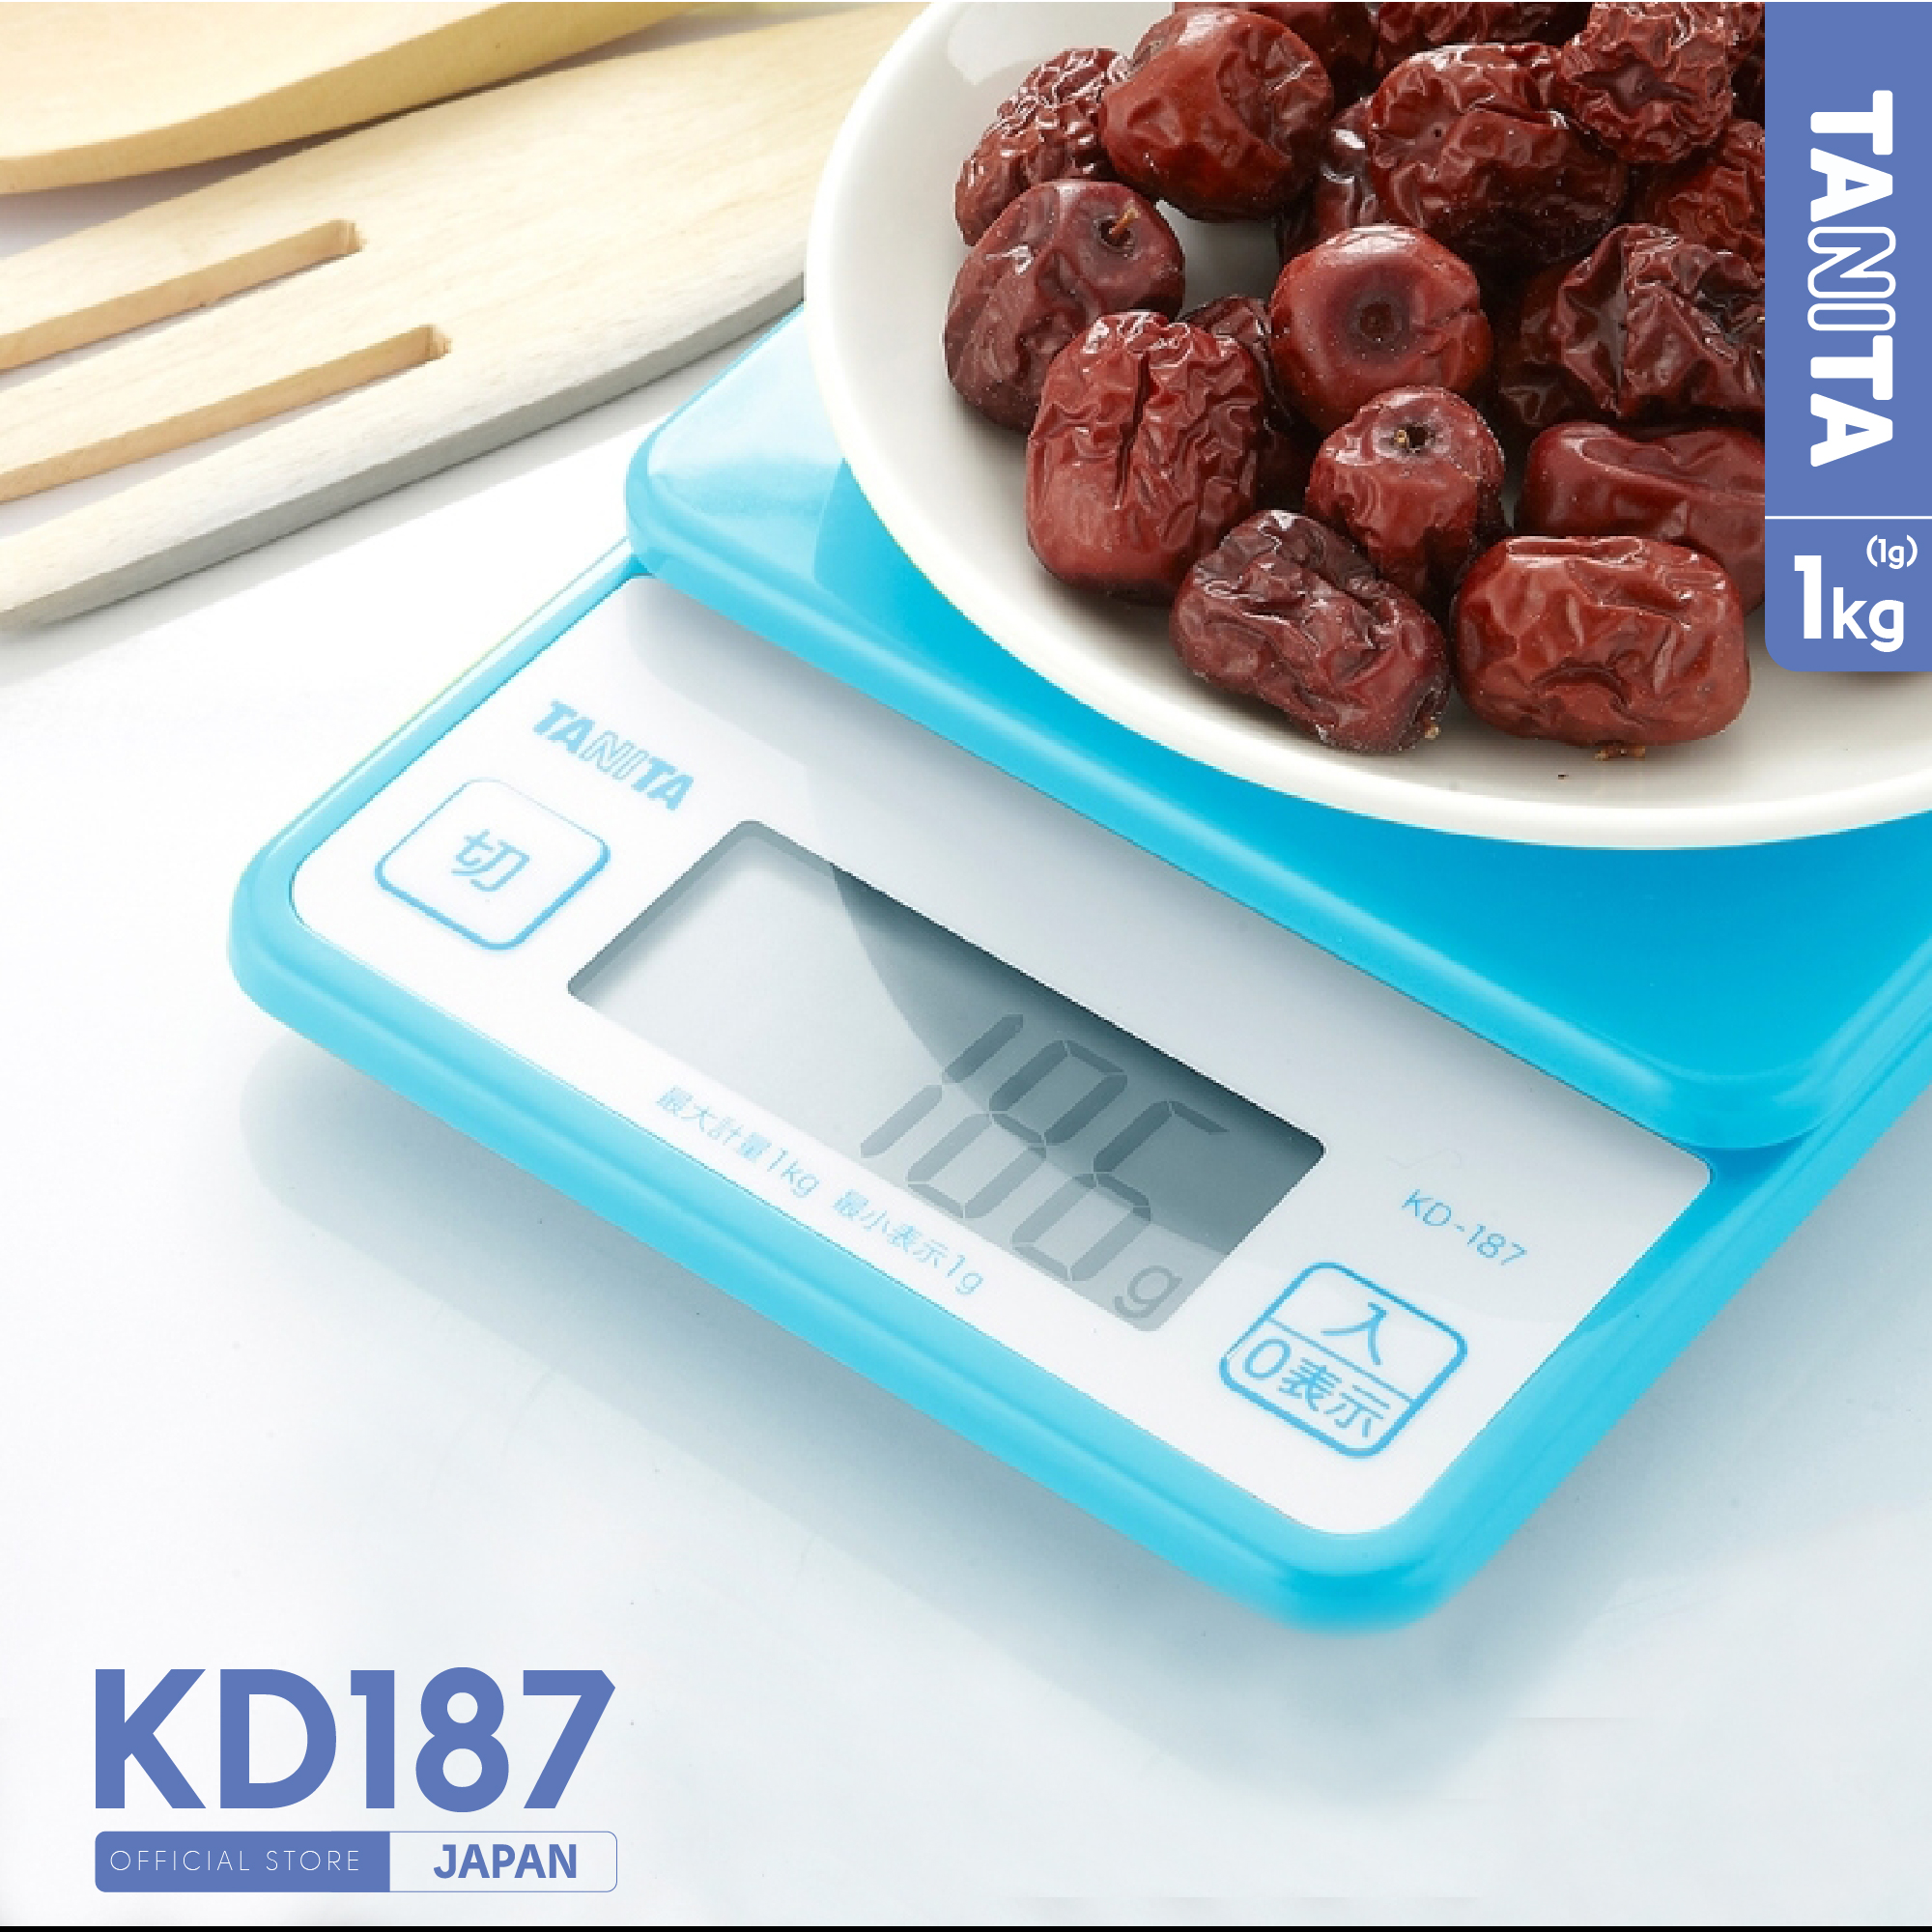 Bạn muốn thay đổi cách đo lường trong căn bếp của mình? Cân bếp điện tử Nhật Bản sẽ giúp bạn giải quyết vấn đề này. Được trang bị nhiều tính năng thông minh và chính xác cao.